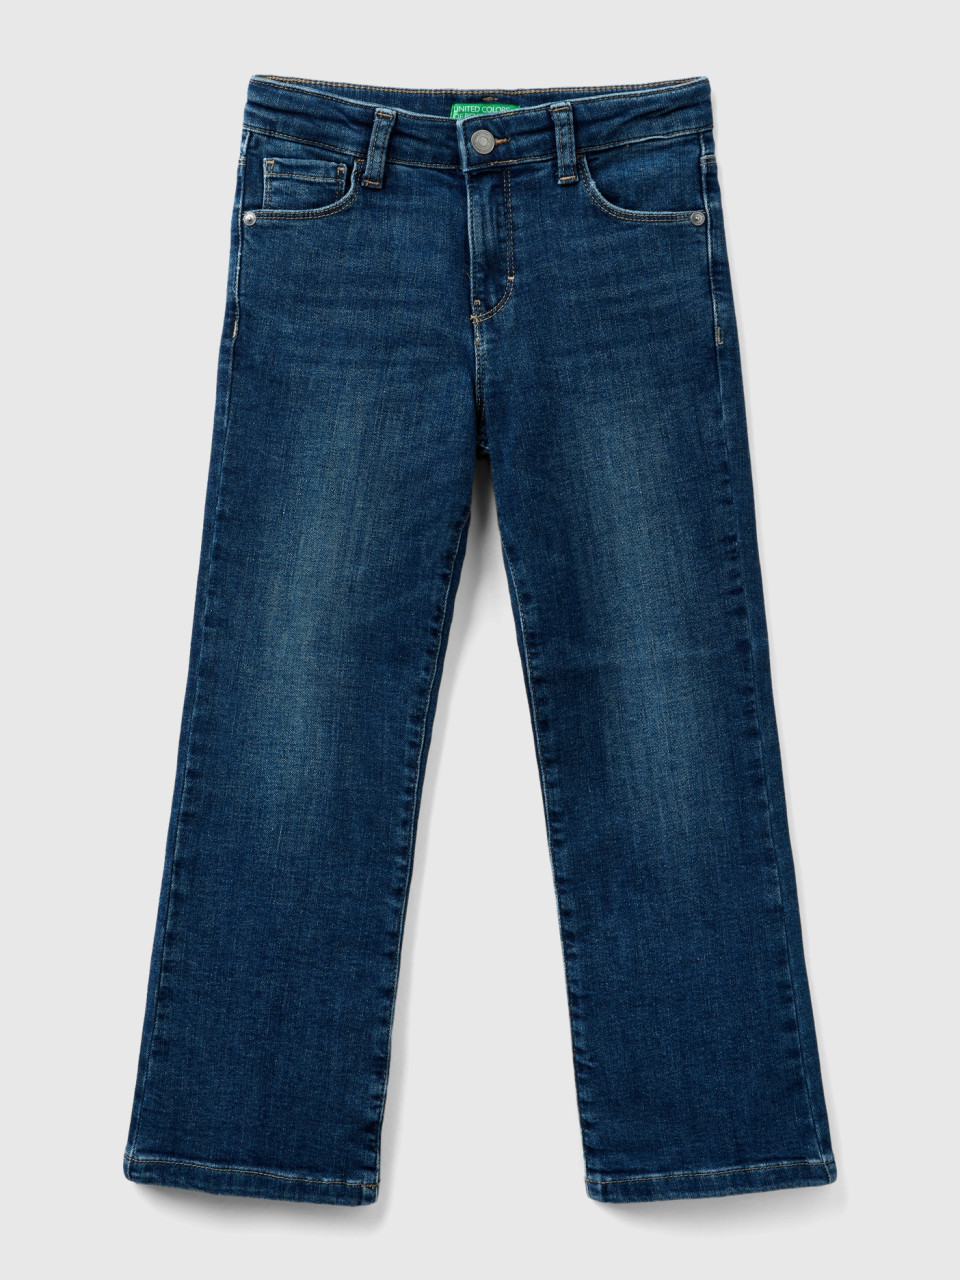 Benetton, Five-pocket-jeans Mit Schlag, Dunkelblau, female